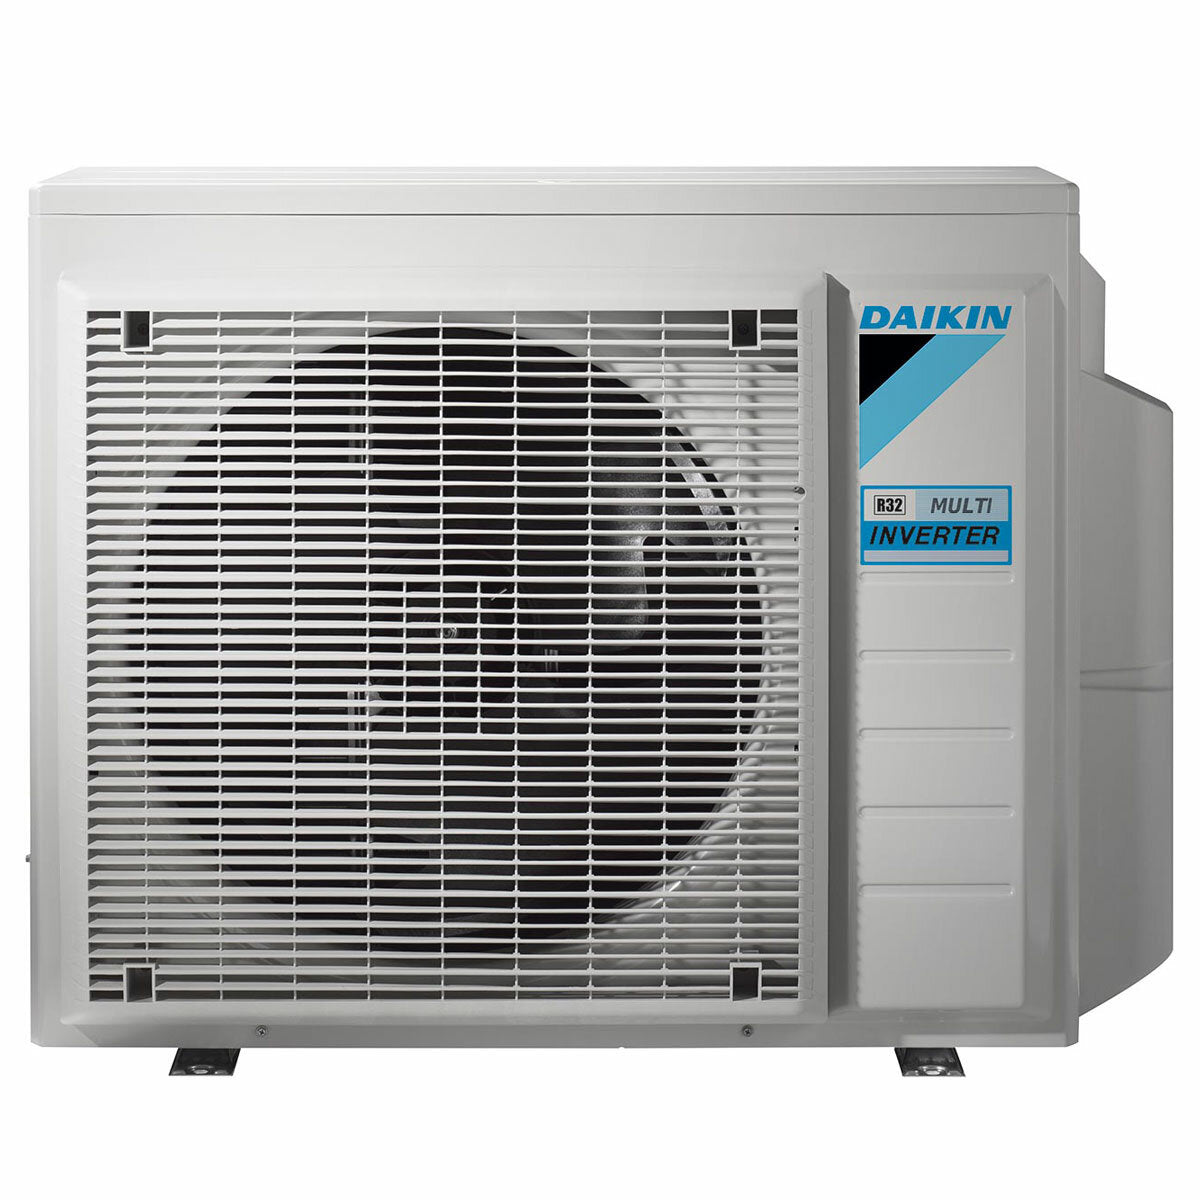 Daikin Emura 3 air conditioner penta split 9000+9000+9000+9000+18000 BTU inverter A++ wifi outdoor unit 7.8 kW White